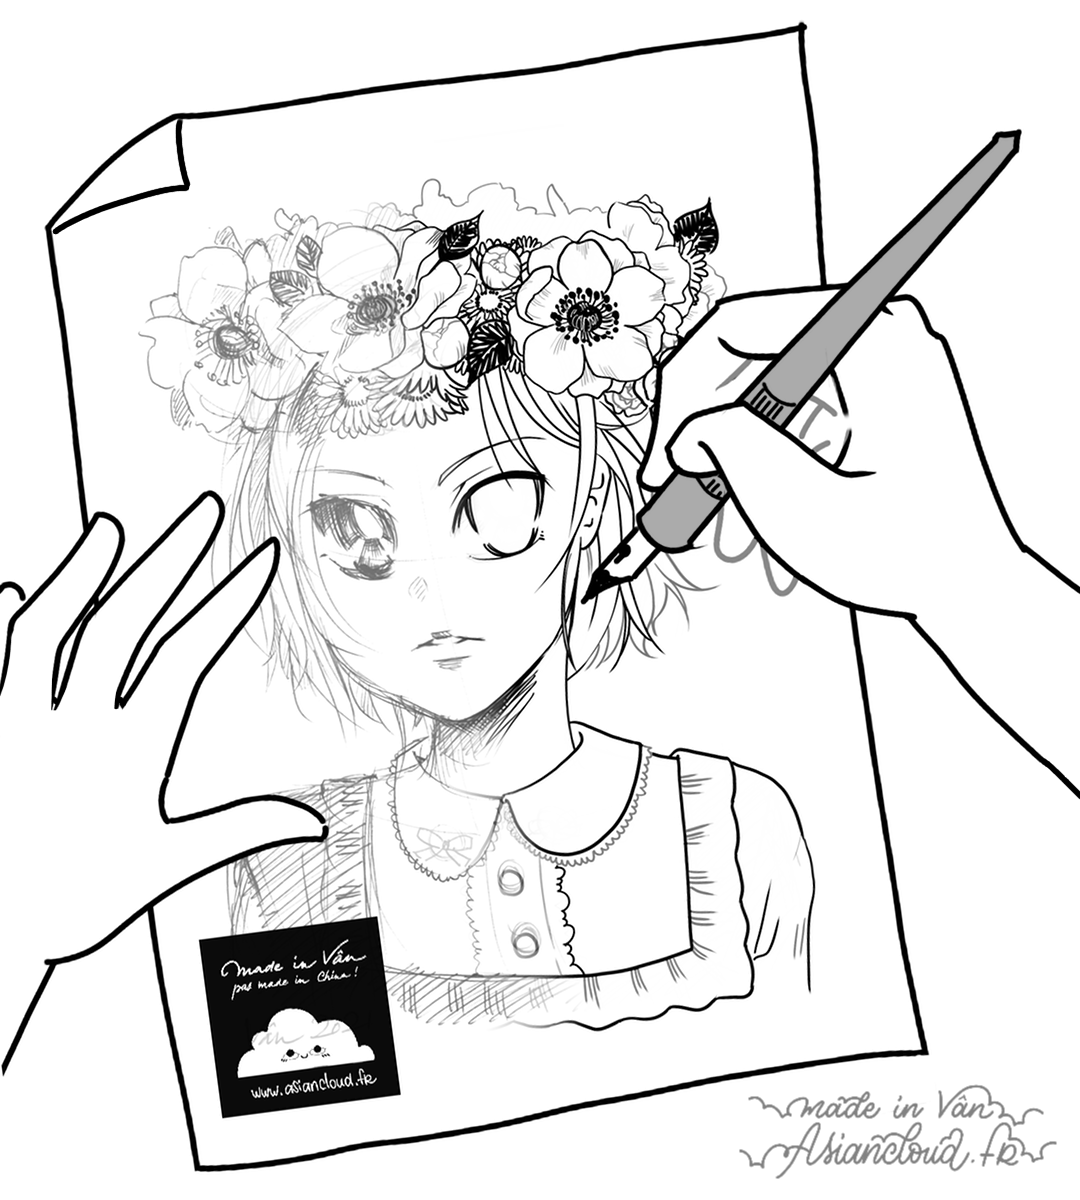 Planche d'exercice pour dessin à l'encre réalisée par Asiancloud - Coloriage d'automne avec jeune fille aux cheveux courts et yeux manga portant une couronne de fleurs